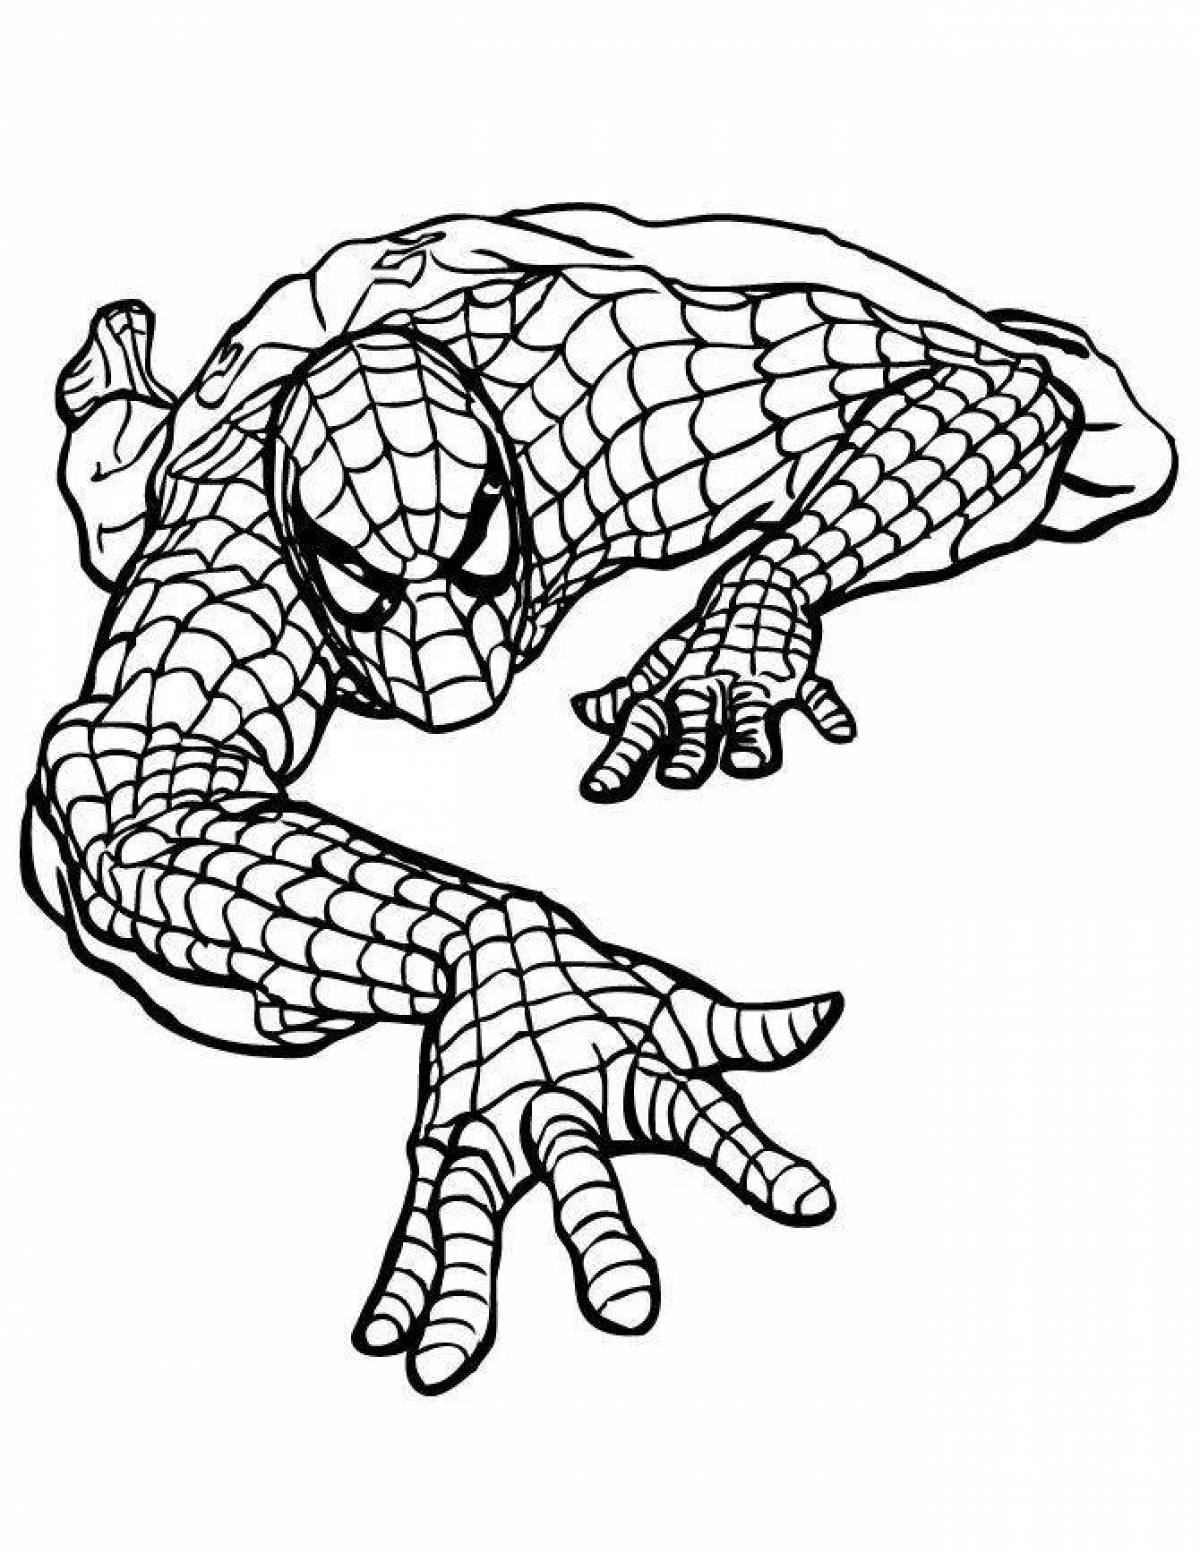 Утонченная страница раскраски человека-паука marvel